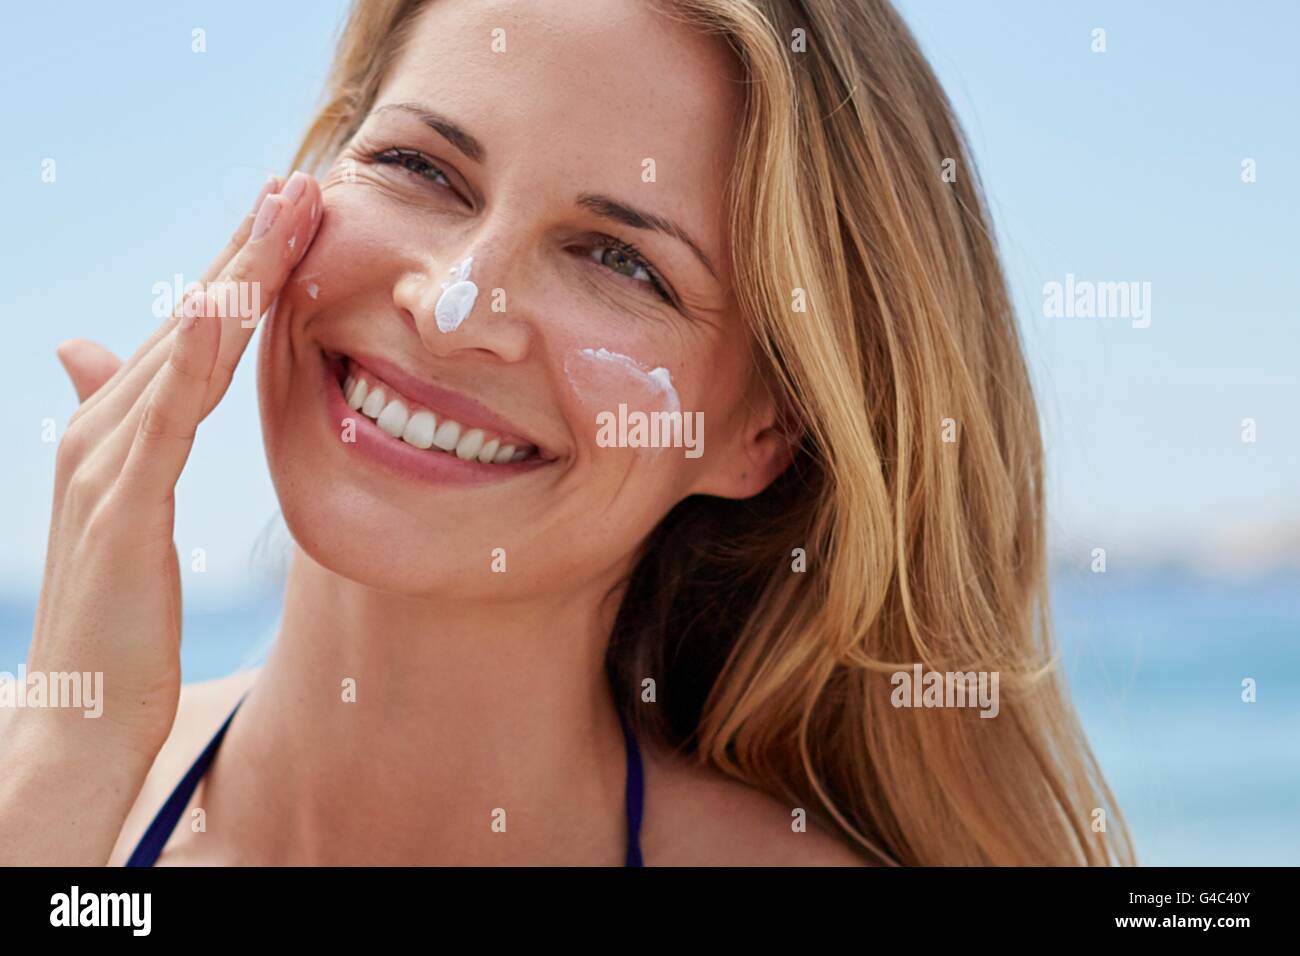 Modelo liberado. Mujer joven de aplicar crema para el sol en su cara. Foto de stock